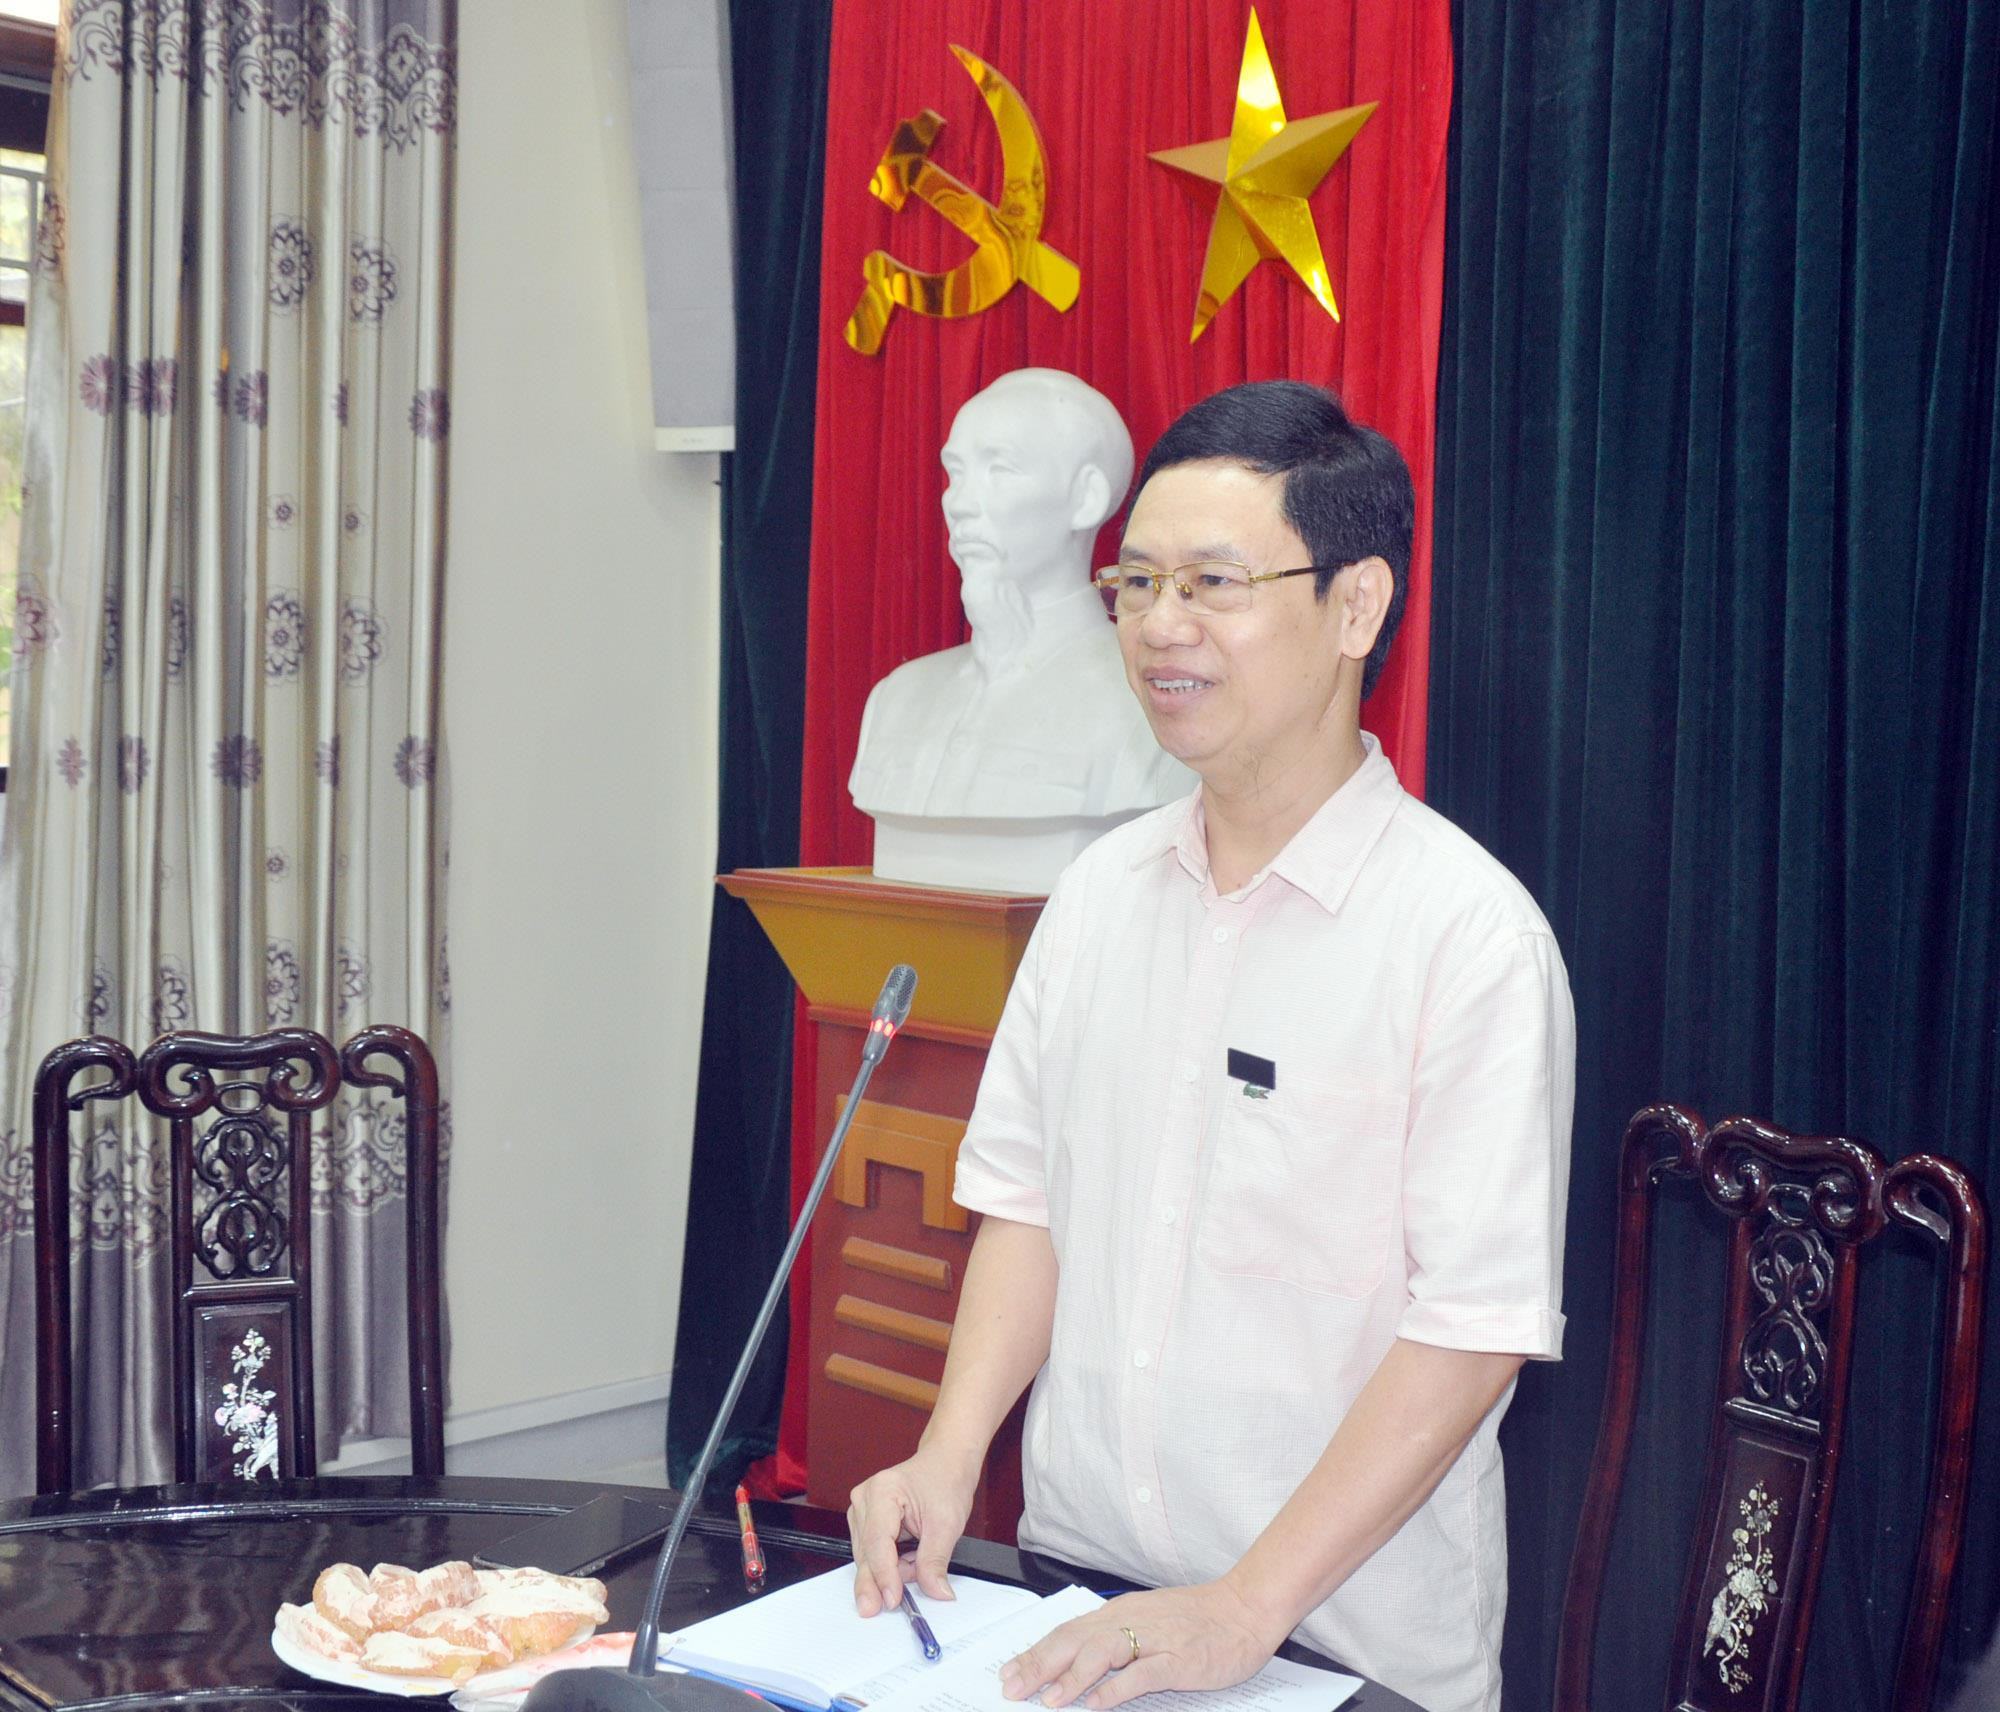 Đồng chí Nguyễn Xuân Sơn  - Phó Bí thư Thường trực Tỉnh ủy lưu ý về vấn đề xây dựng giải pháp để đạt được các mục tiêu Nghị quyết 05 đề ra